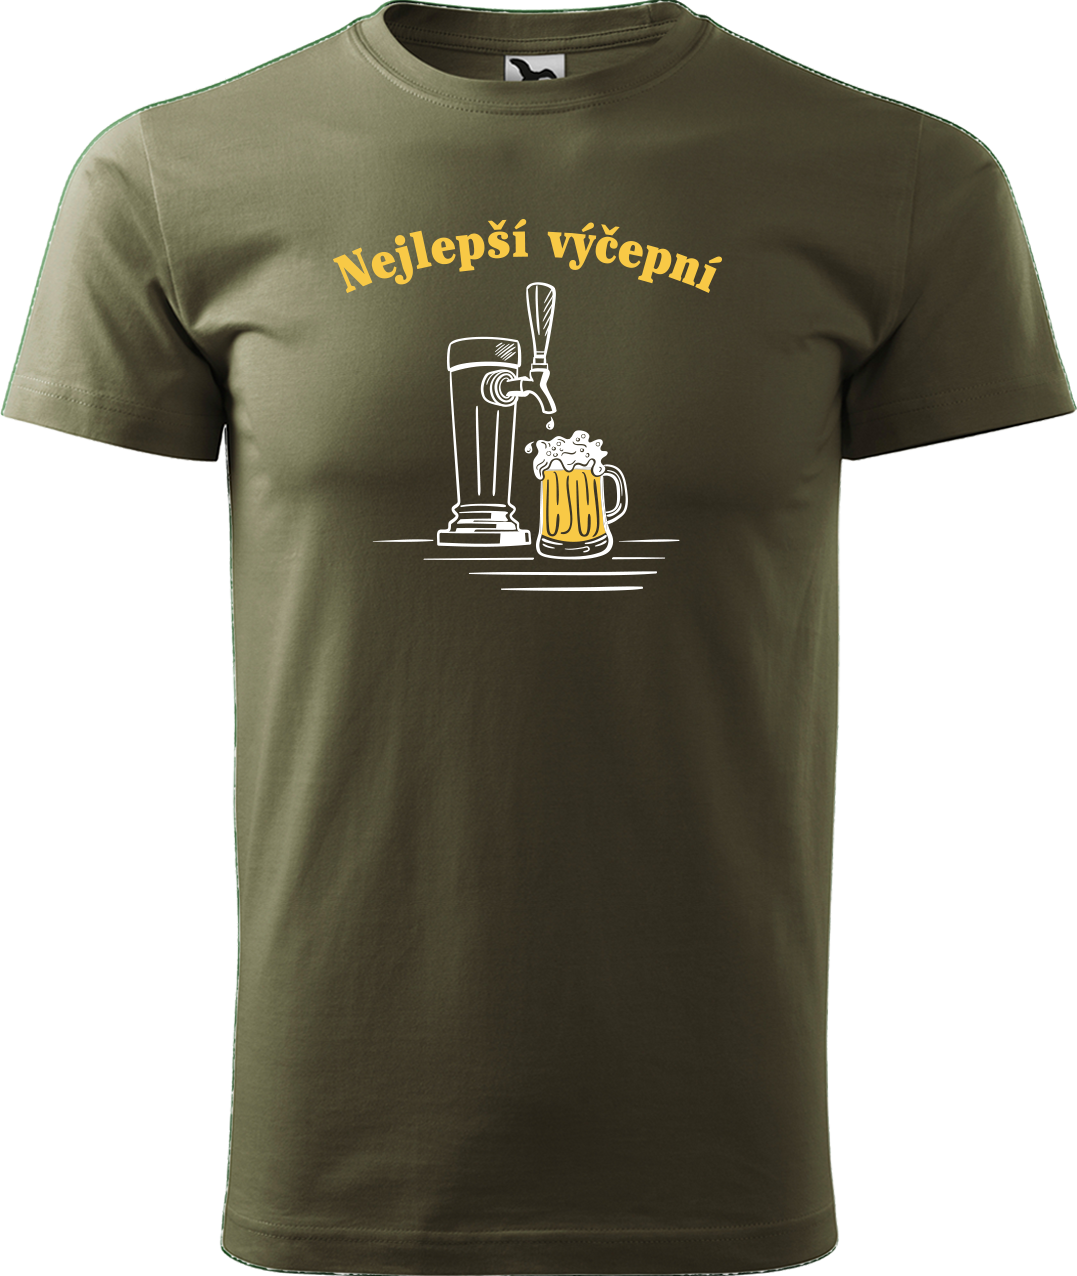 Pivní tričko - Nejlepší hospodskej Velikost: 3XL, Barva: Military (69)